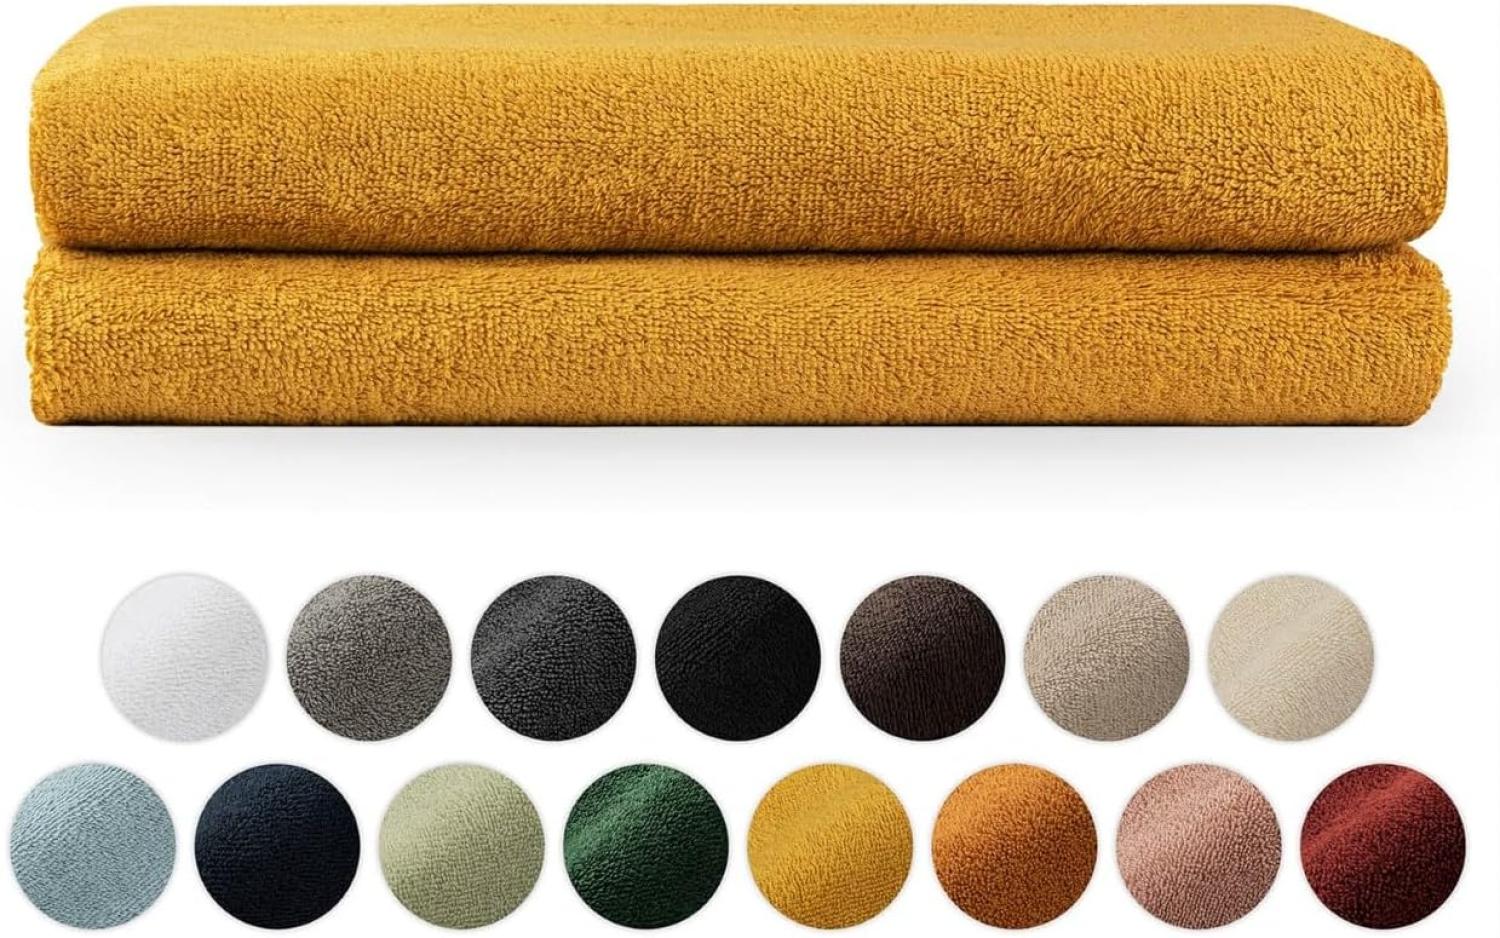 Blumtal Premium Frottier Handtücher Set mit Aufhängschlaufen - Baumwolle Oeko-TEX Zertifiziert, weich, saugstark - 2X Badetuch (70x140 cm), Spicy Mustard (Gelb) Bild 1